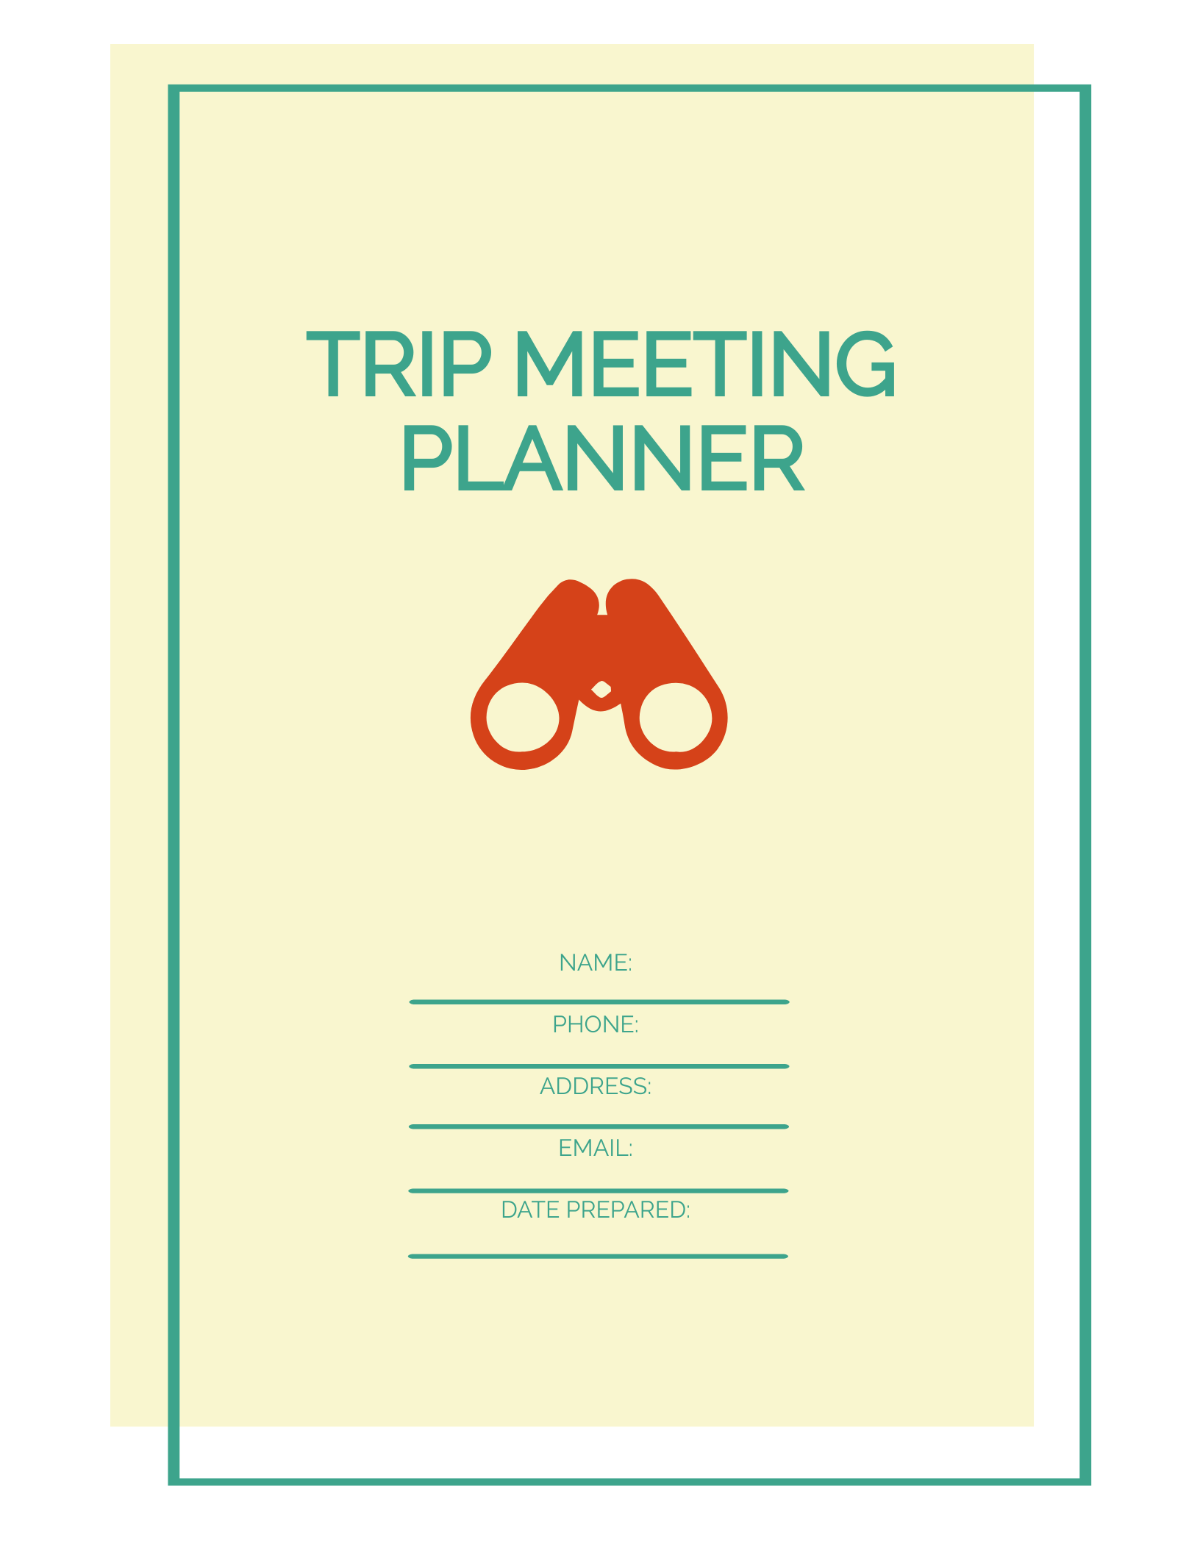 Trip Meeting Planner Template